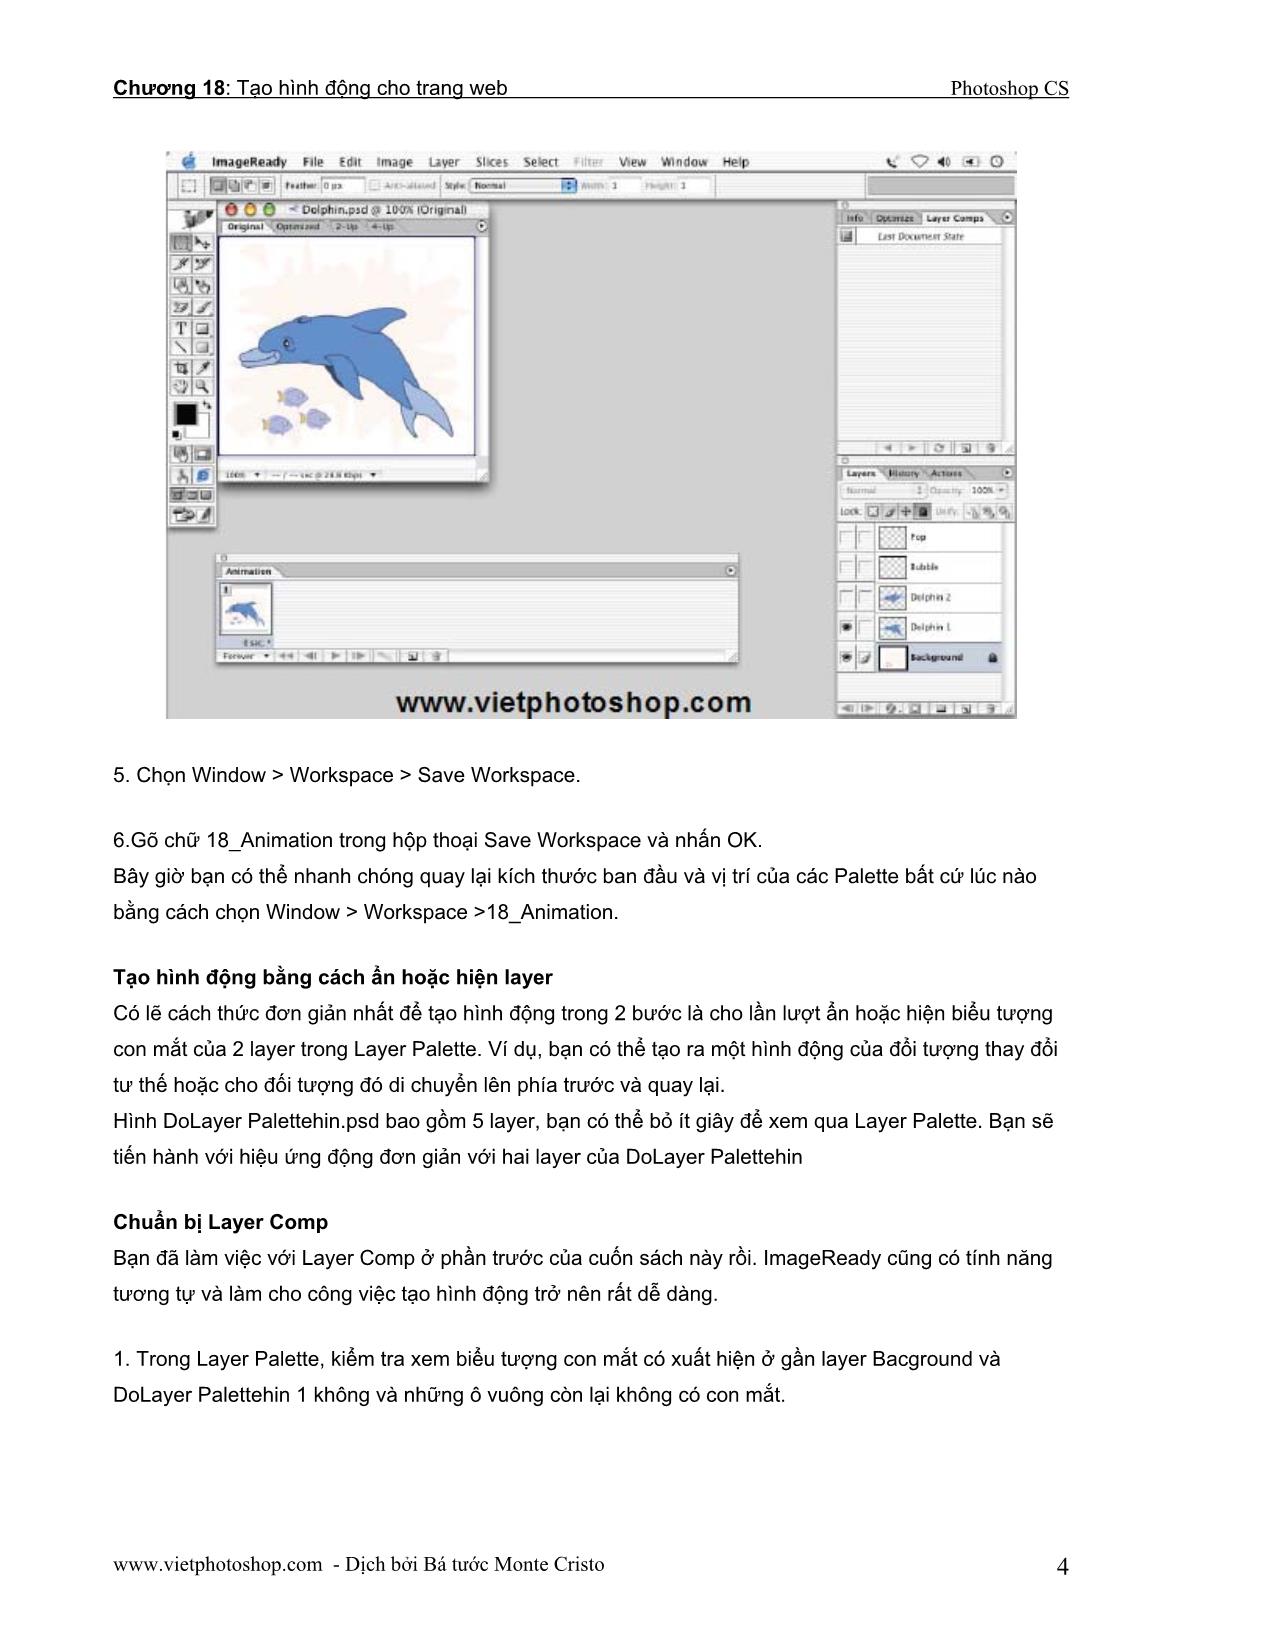 Giáo trình Photoshop CS - Chương 18: Tạo hình động cho trang Web trang 4